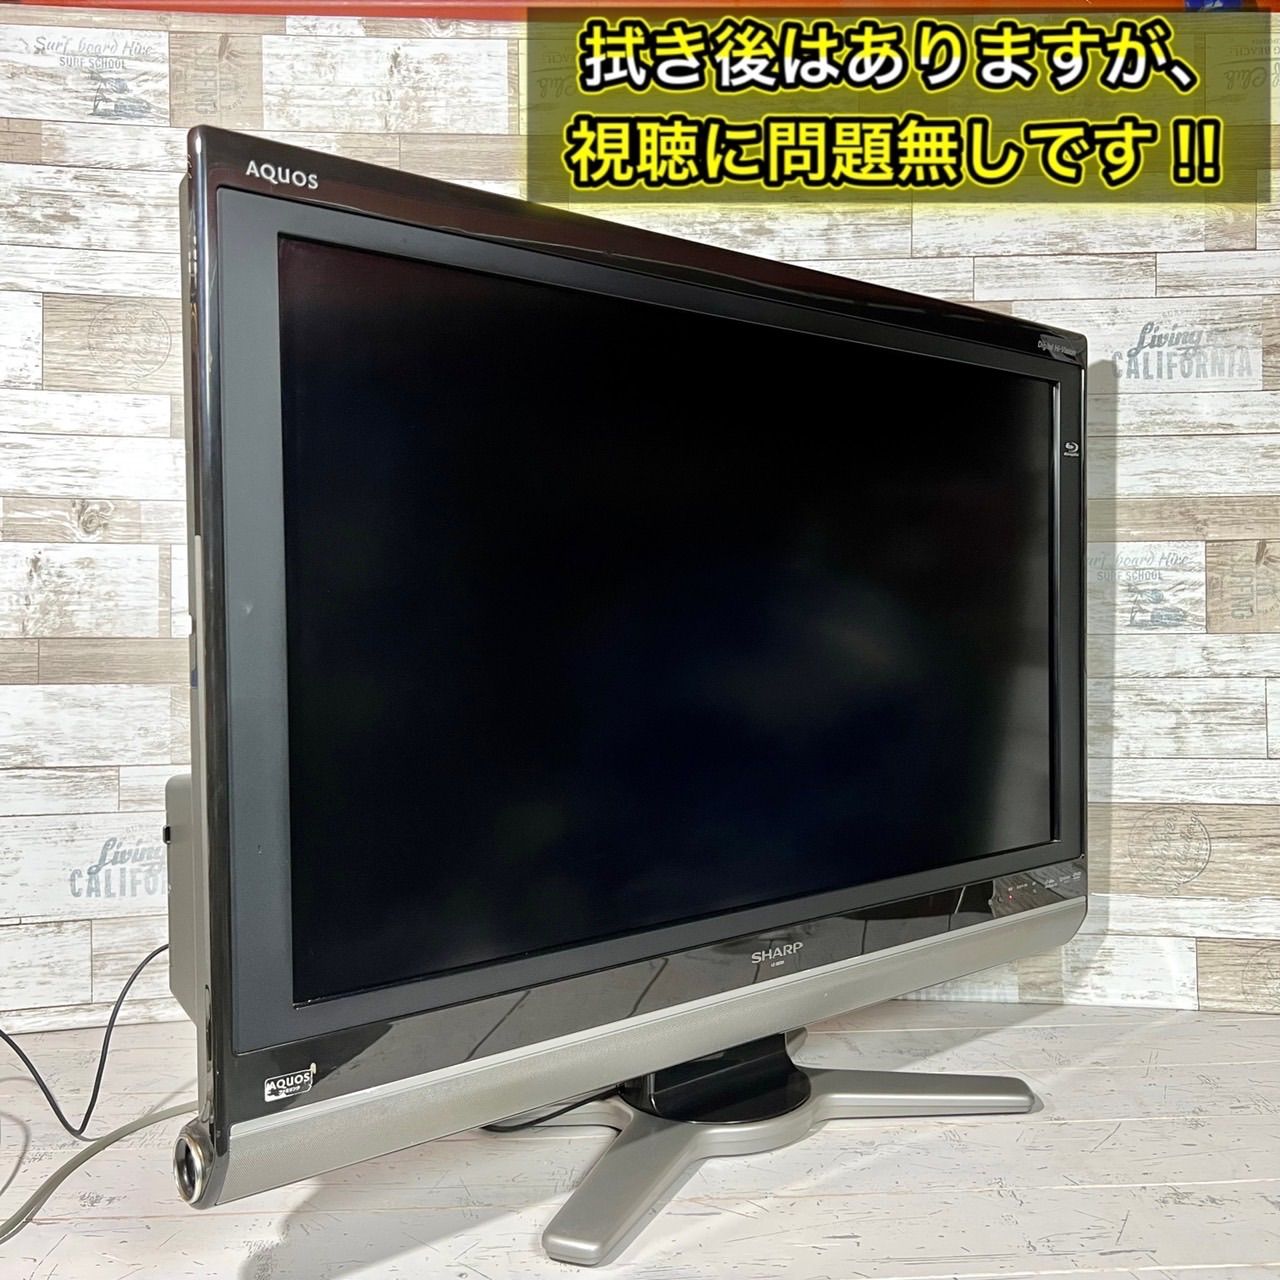 SHARP AQUOS 液晶テレビ LC-37DX1 37インチ ブルーレイ内蔵 - テレビ